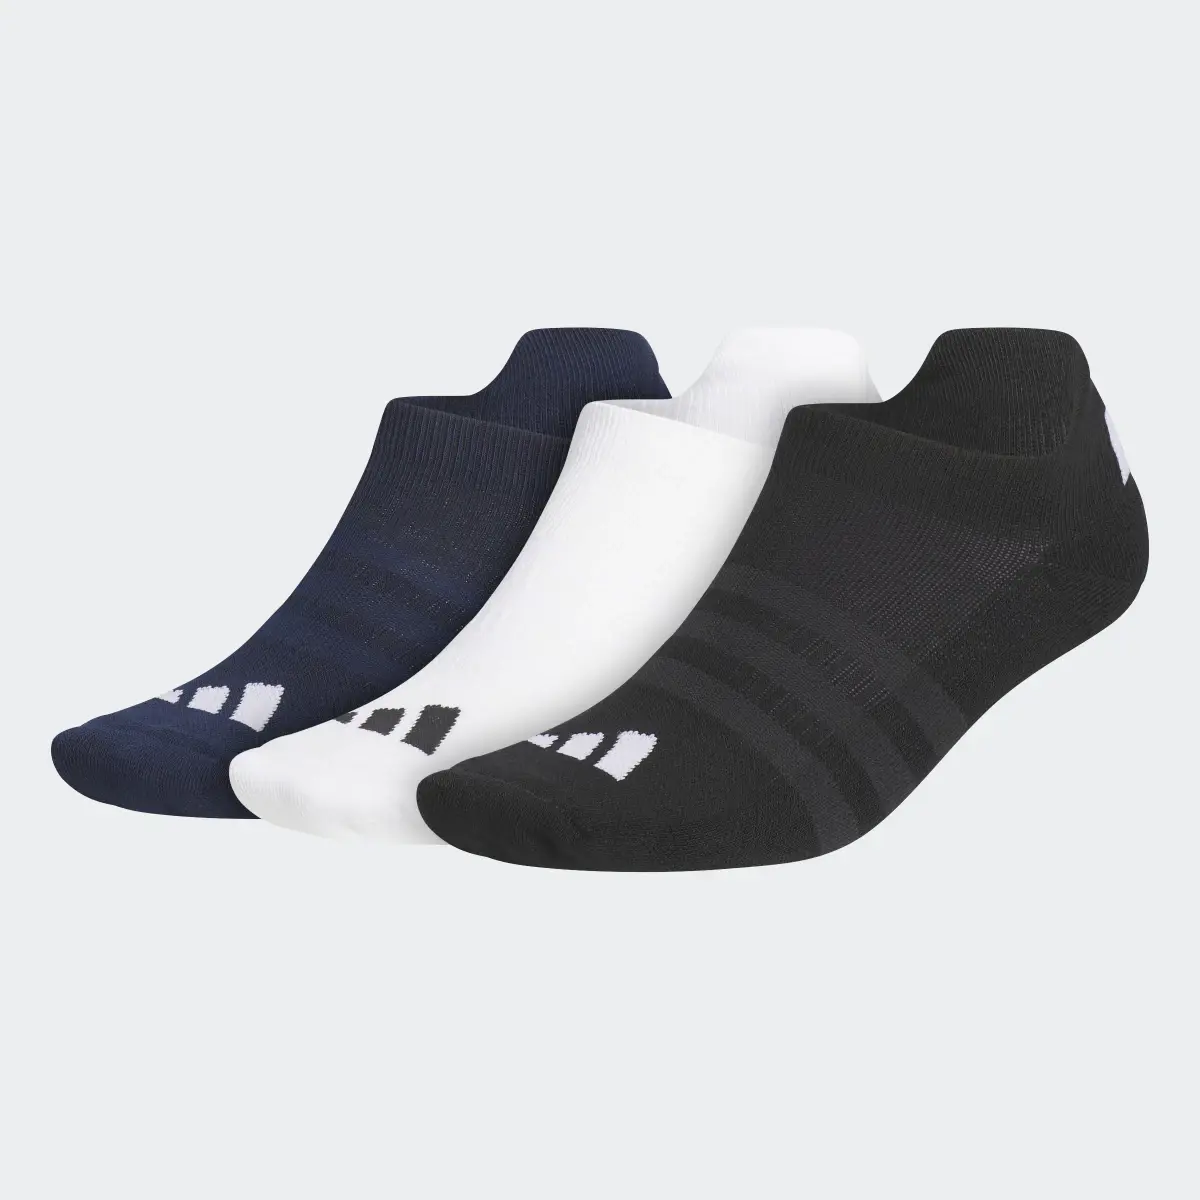 Adidas Socquettes (3 paires). 2